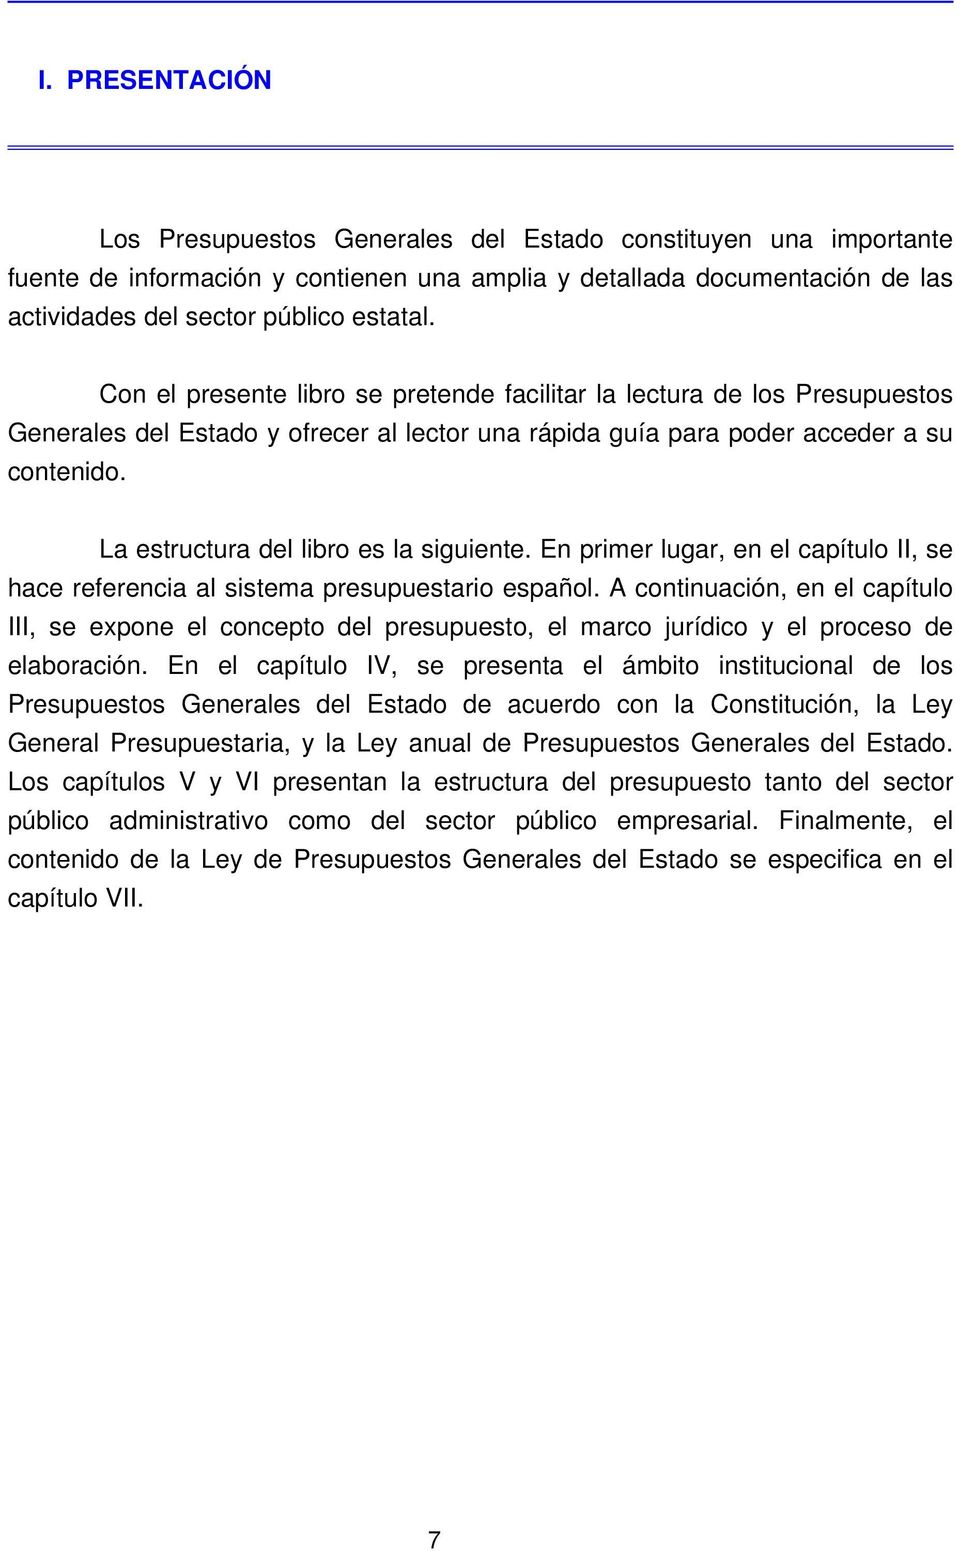 La estructura del libro es la siguiente. En primer lugar, en el capítulo II, se hace referencia al sistema presupuestario español.